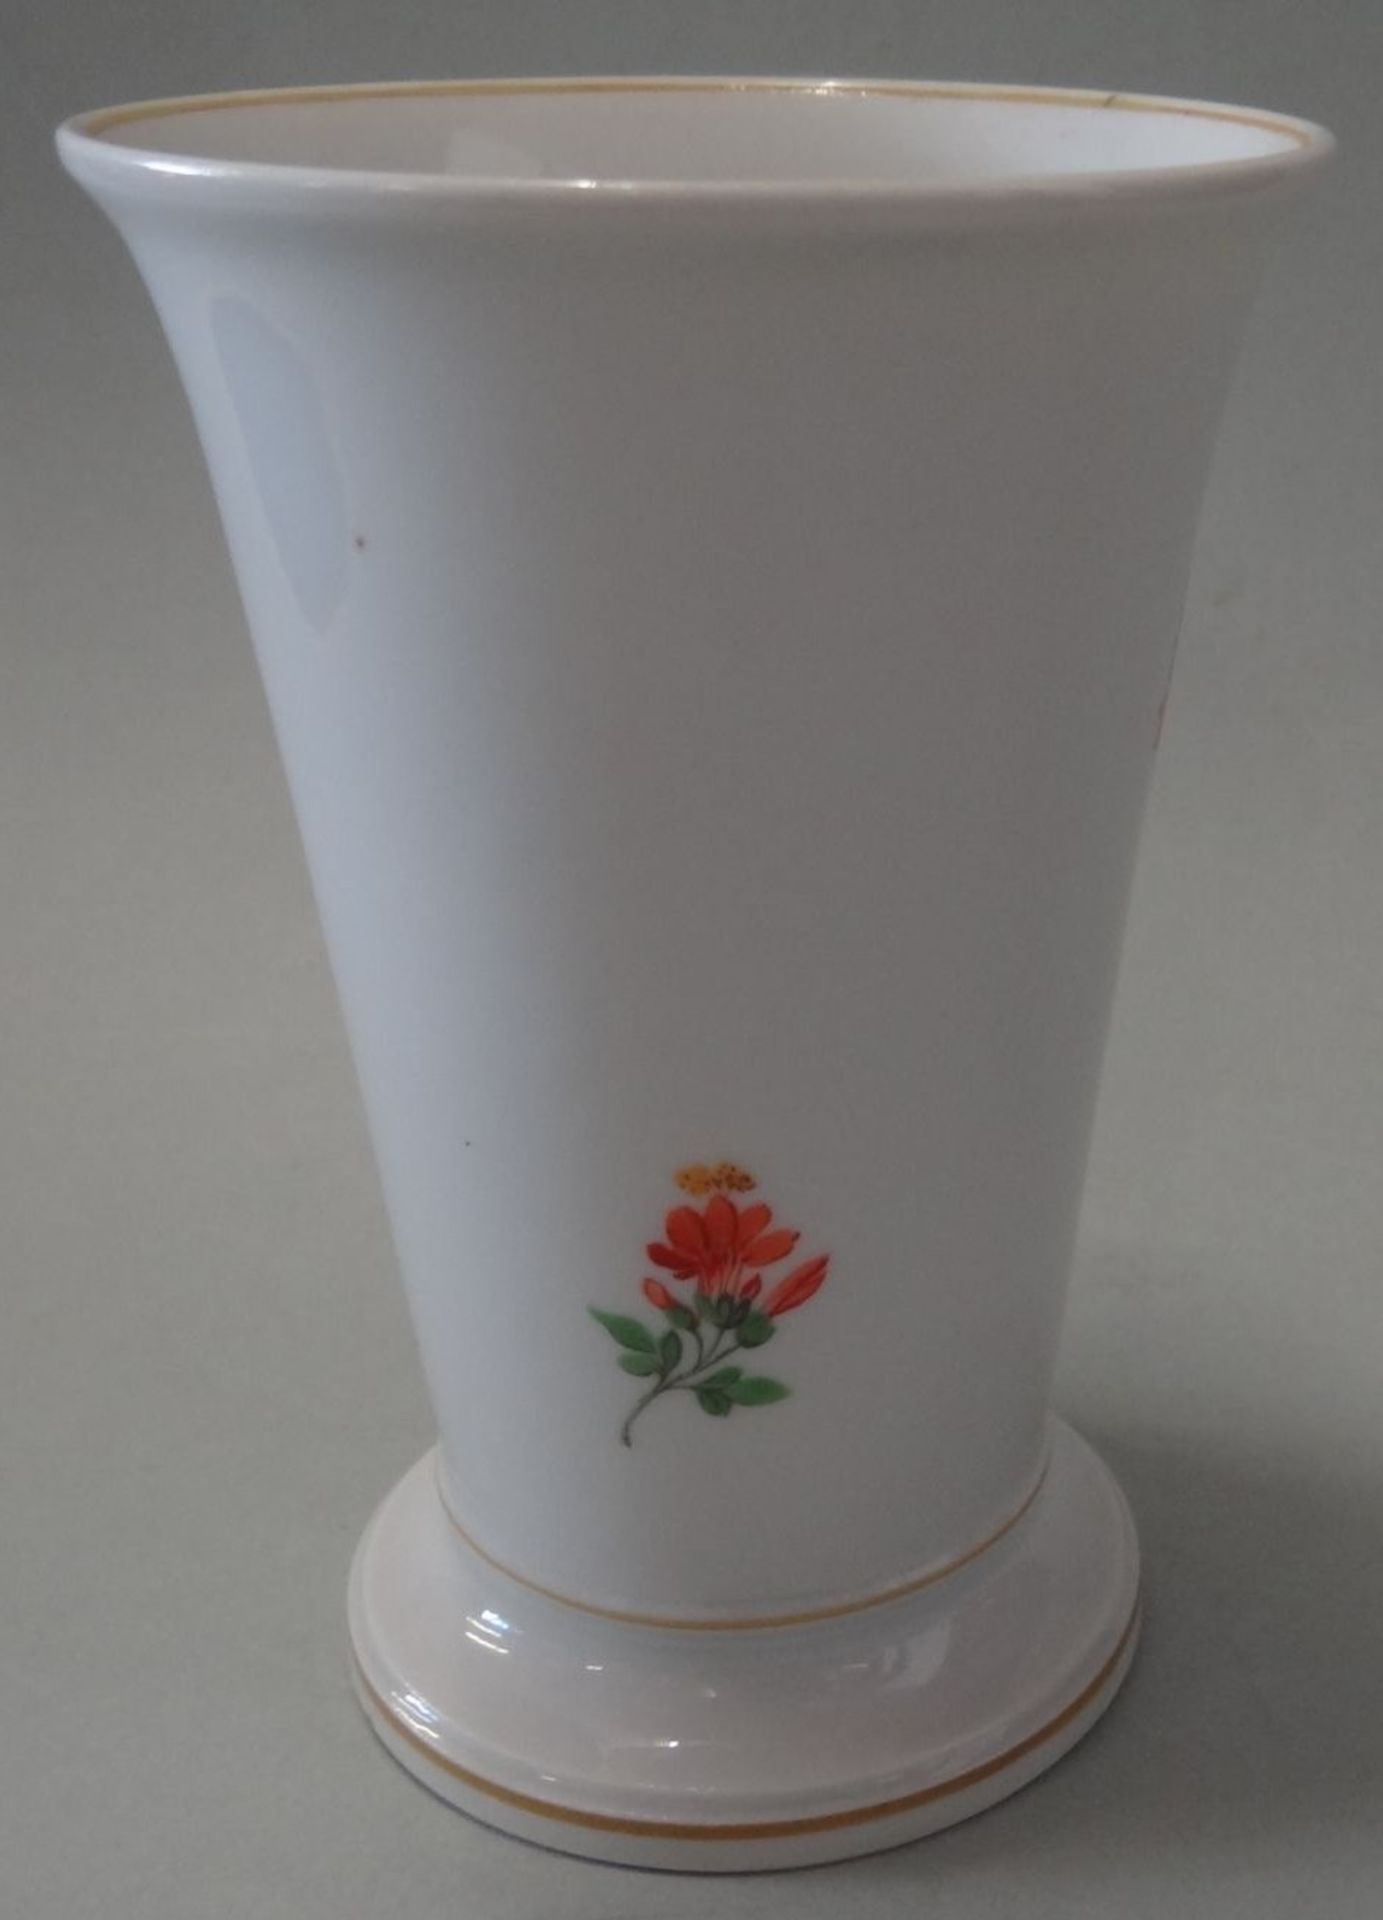 kl. Vase auf Stand "Meissen" Blumenmalerei, Schwertermarke mit Punkt, H-12,5 cm, D-8,5 cm - Bild 3 aus 4